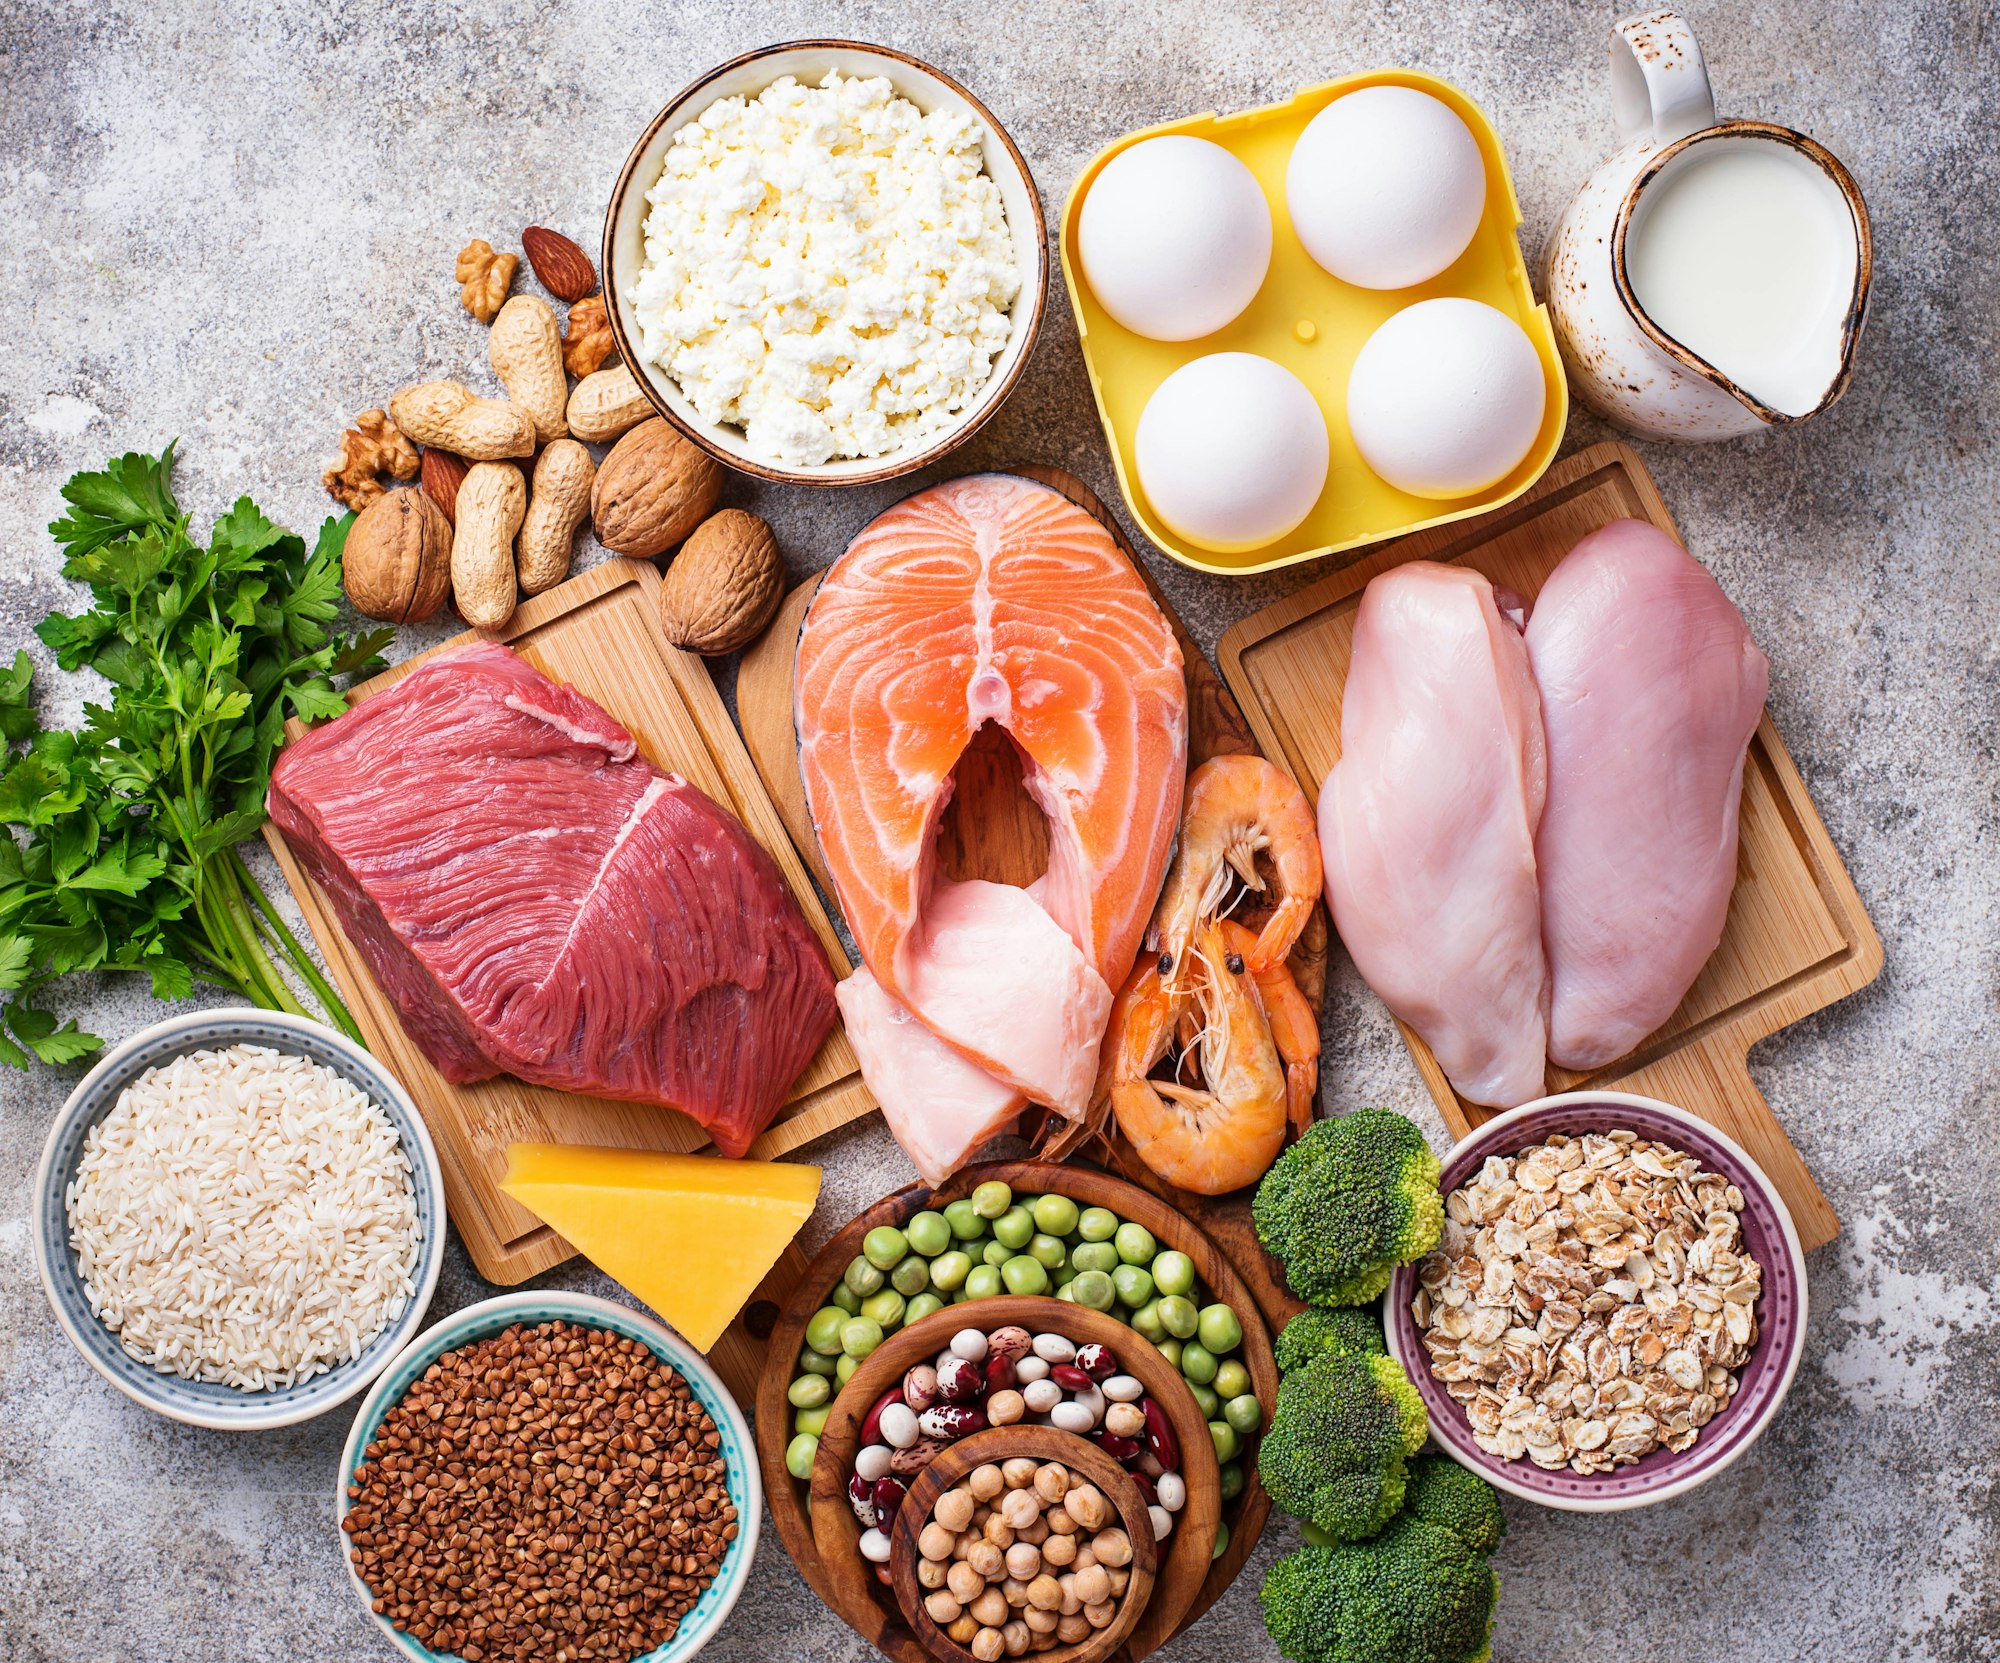 Διατροφή: 12 τροφές με υψηλή περιεκτικότητα σε πρωτεΐνη